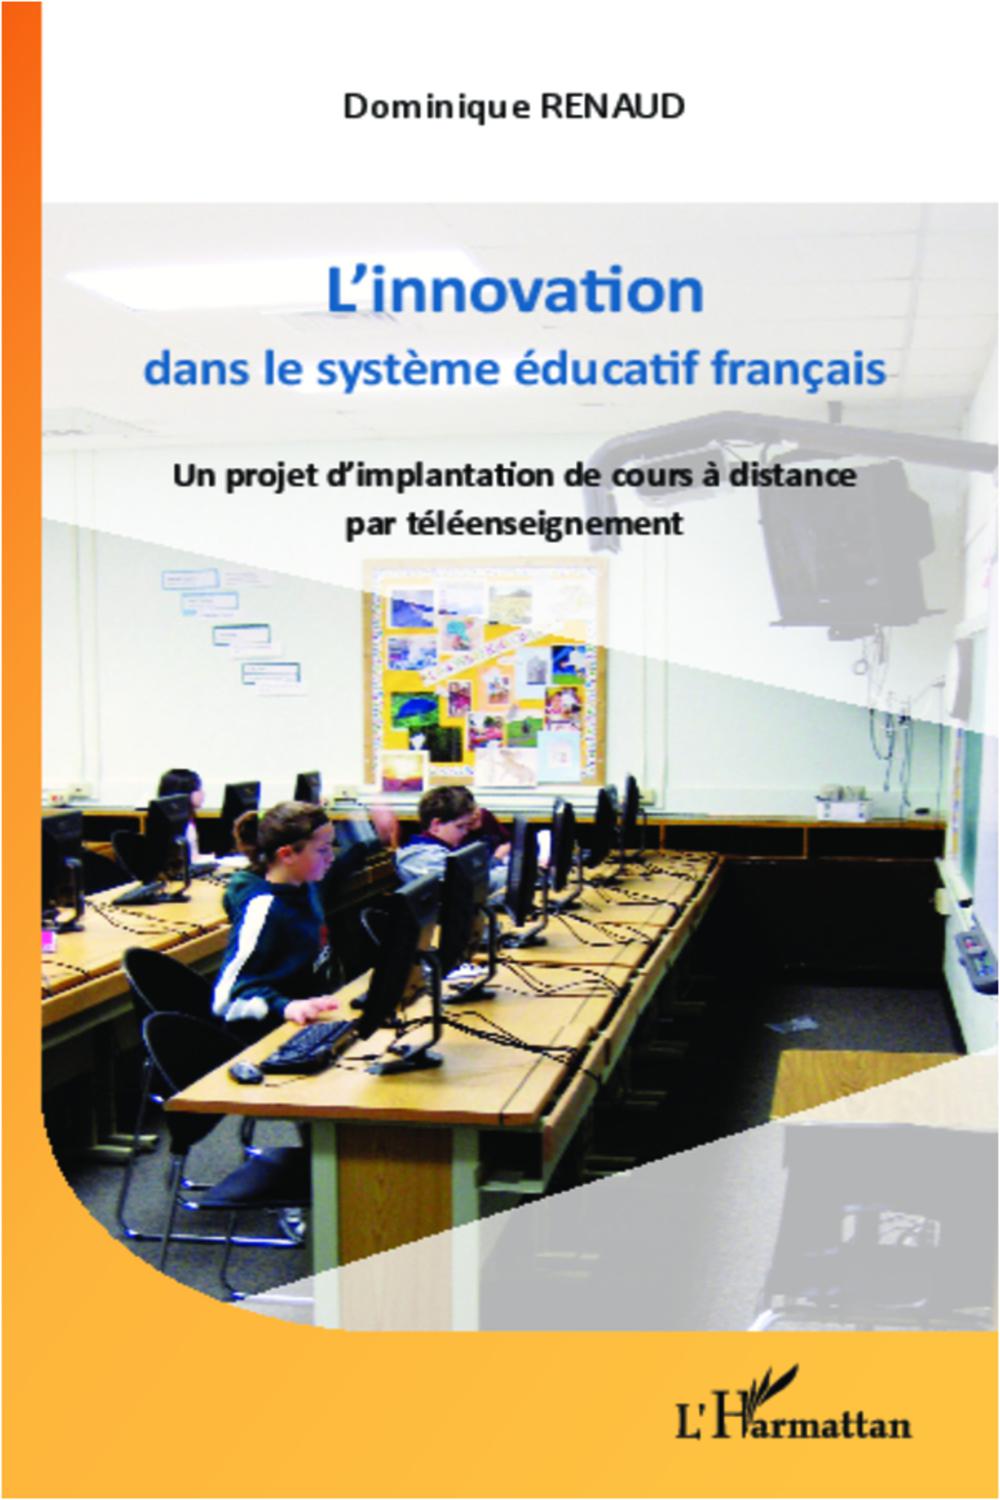 L'innovation dans le système éducatif français - Dominique Renaud